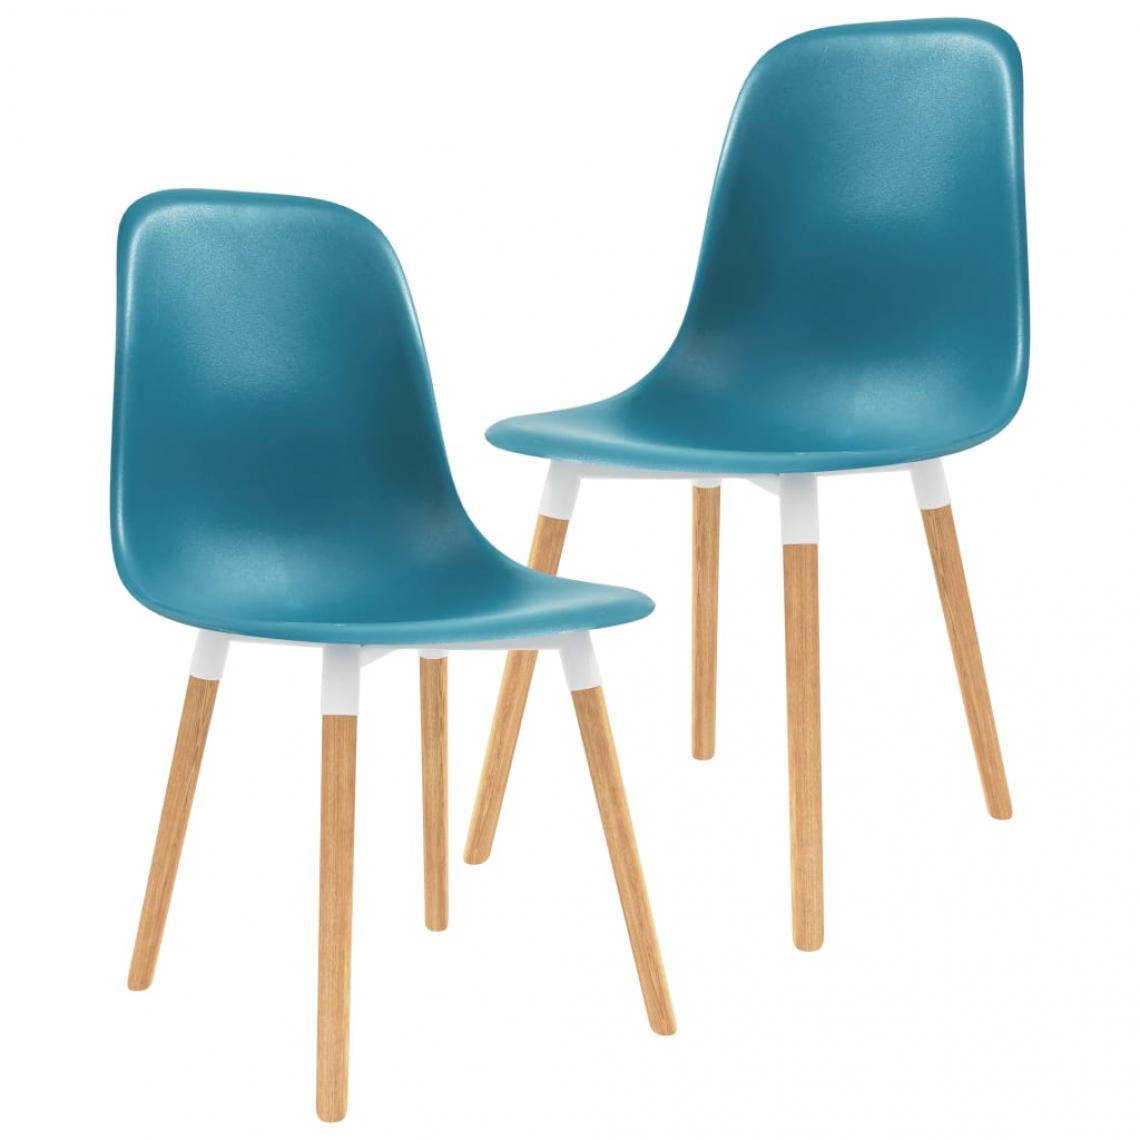 Decoshop26 - Lot de 2 chaises de salle à manger cuisine design scandinave plastique turquoise CDS021068 - Chaises